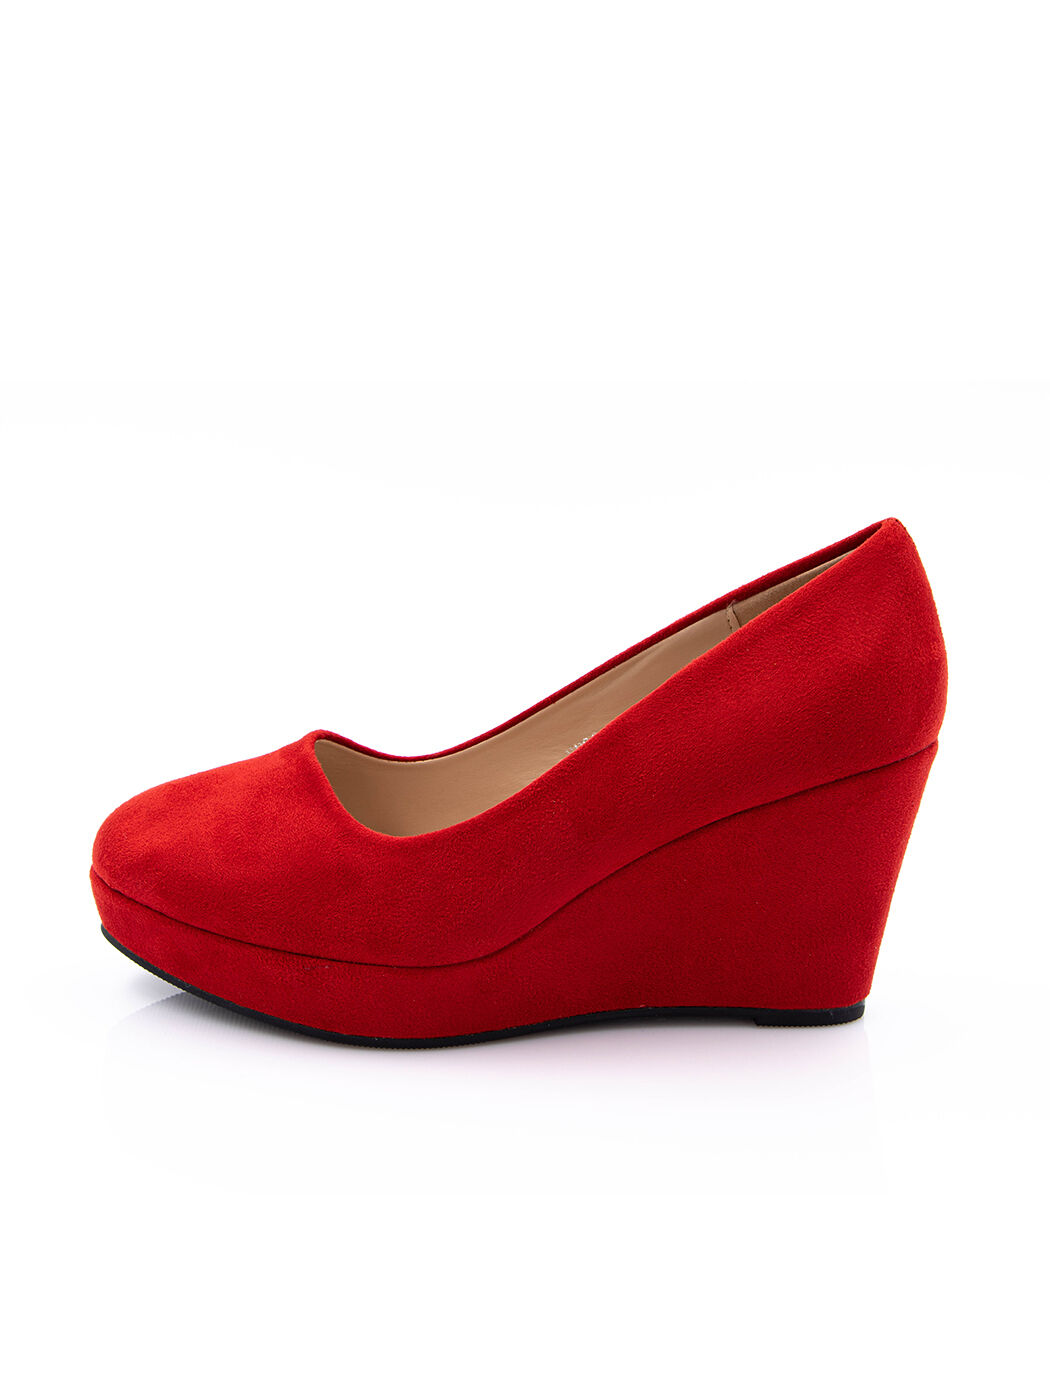 Туфли женские красные экозамша каблук устойчивый демисезон от производителя 4M